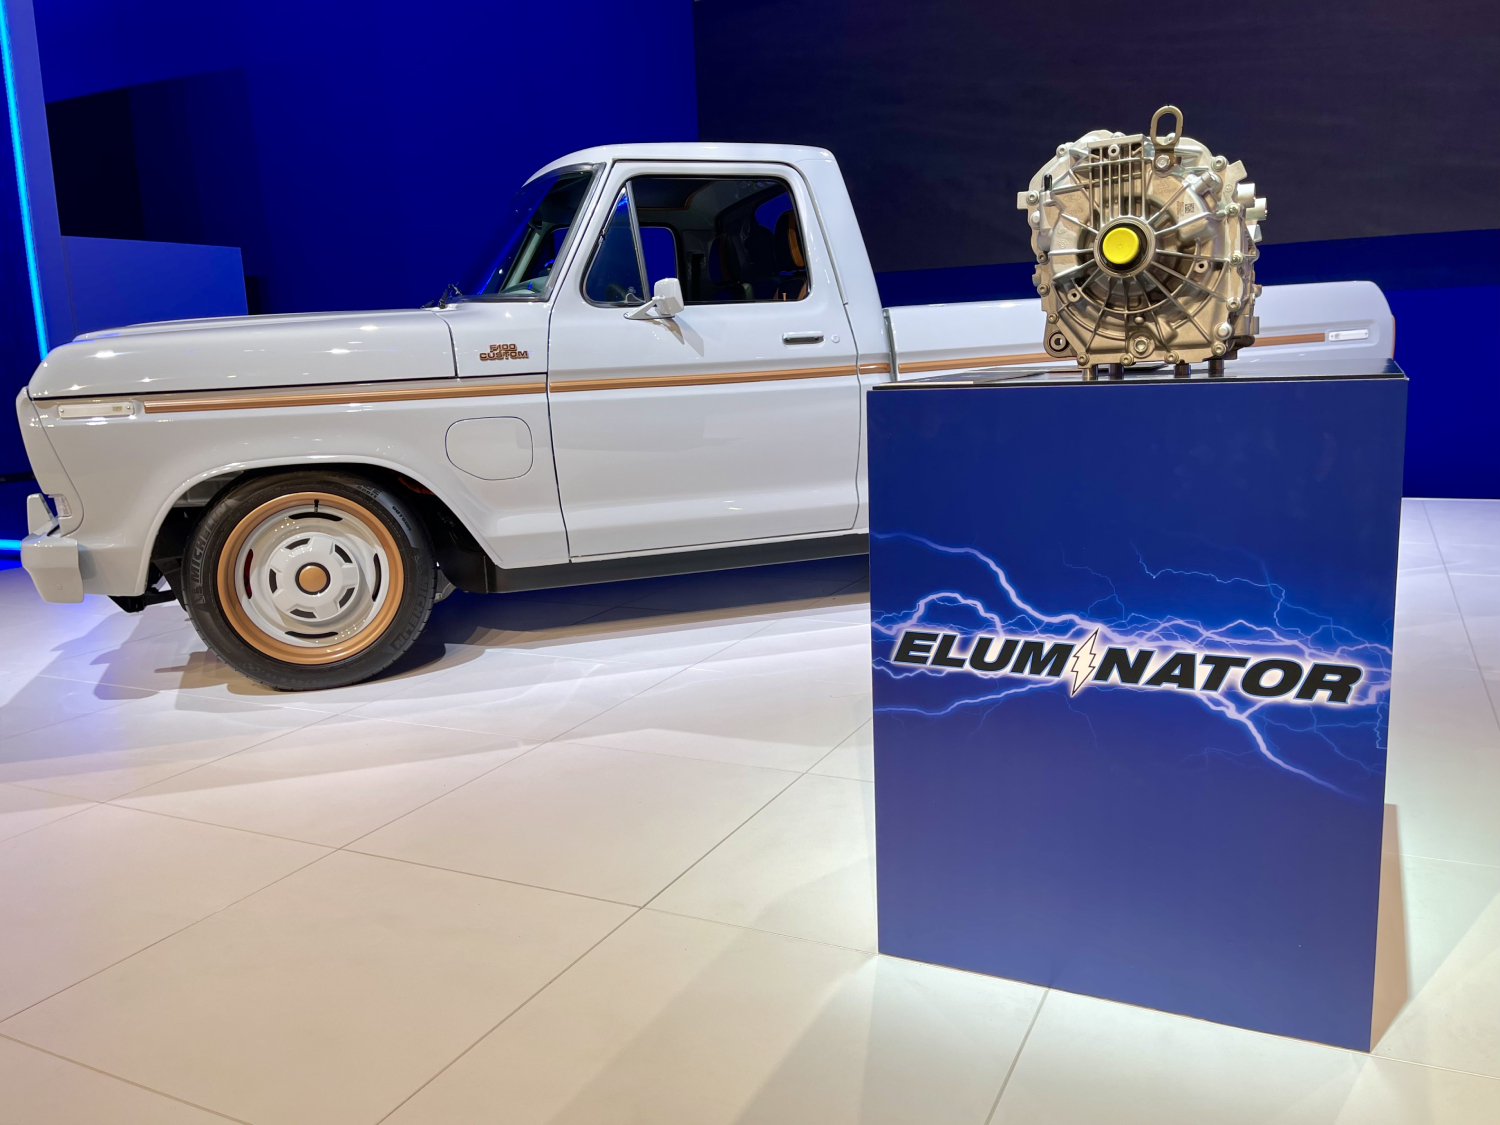 Ford Eluminator Motor and F-100 Eluminator truck at SEMA 2021